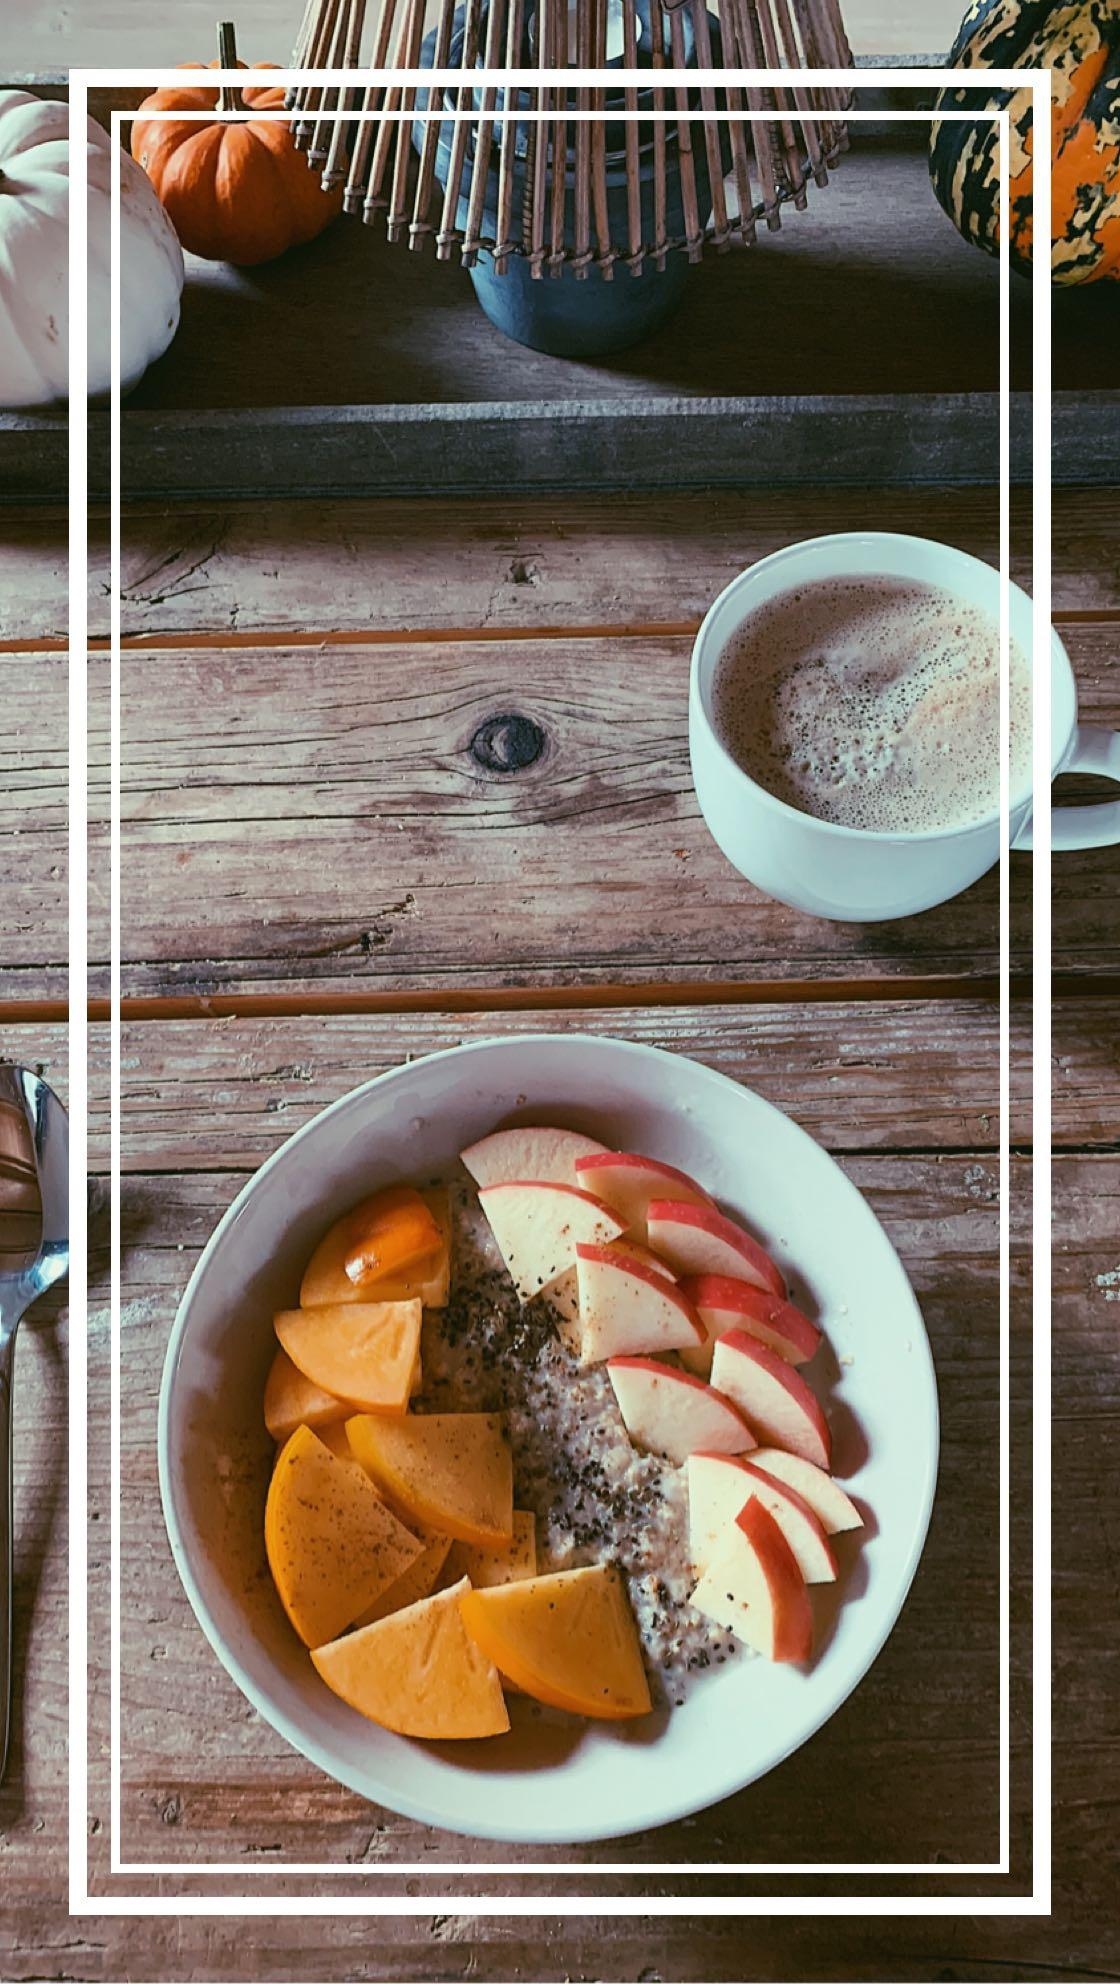 Guten Morgen ☺️ Ich bin #neuhier

Mein Tag startet mit einer Porridge Bowl und natürlich Kaffee #herbst #kaffeeliebe